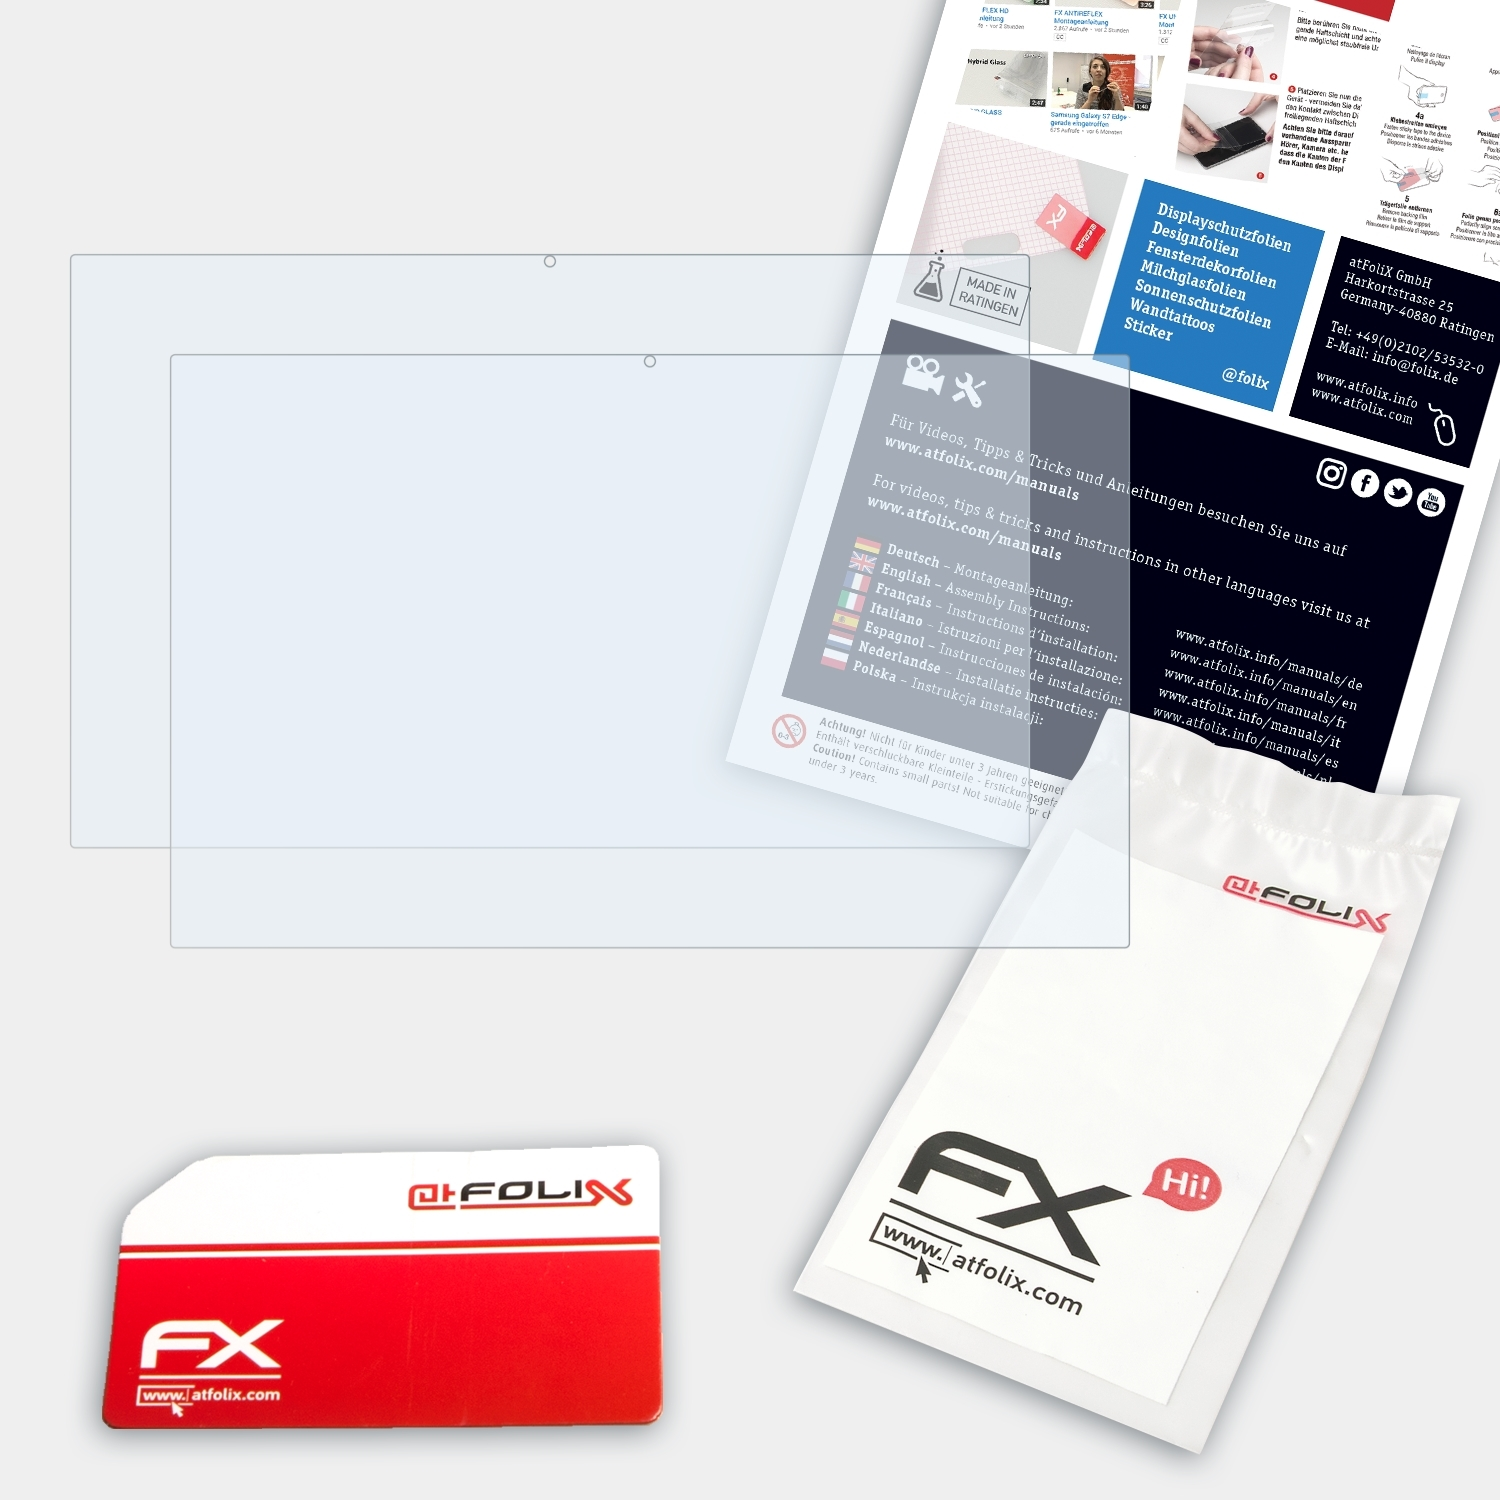 ATFOLIX 2x FX-Clear Displayschutz(für Flip C436 Chromebook (C436FA)) Asus